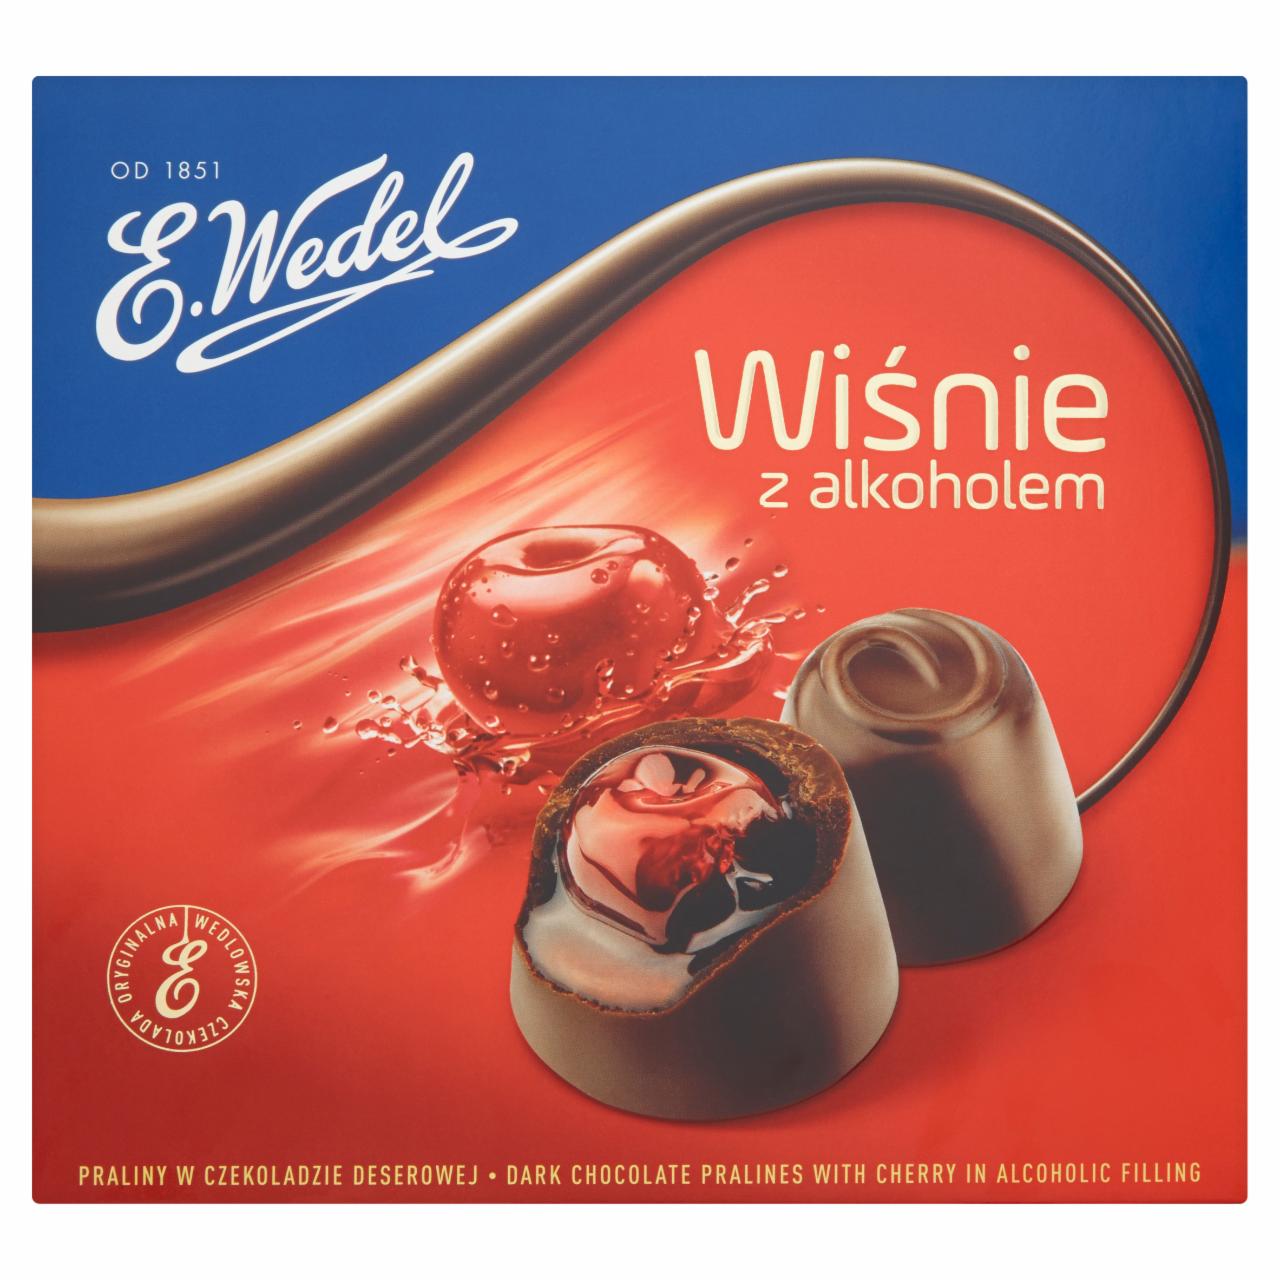 Zdjęcia - E. Wedel Wiśnie z alkoholem Praliny w czekoladzie deserowej 141 g